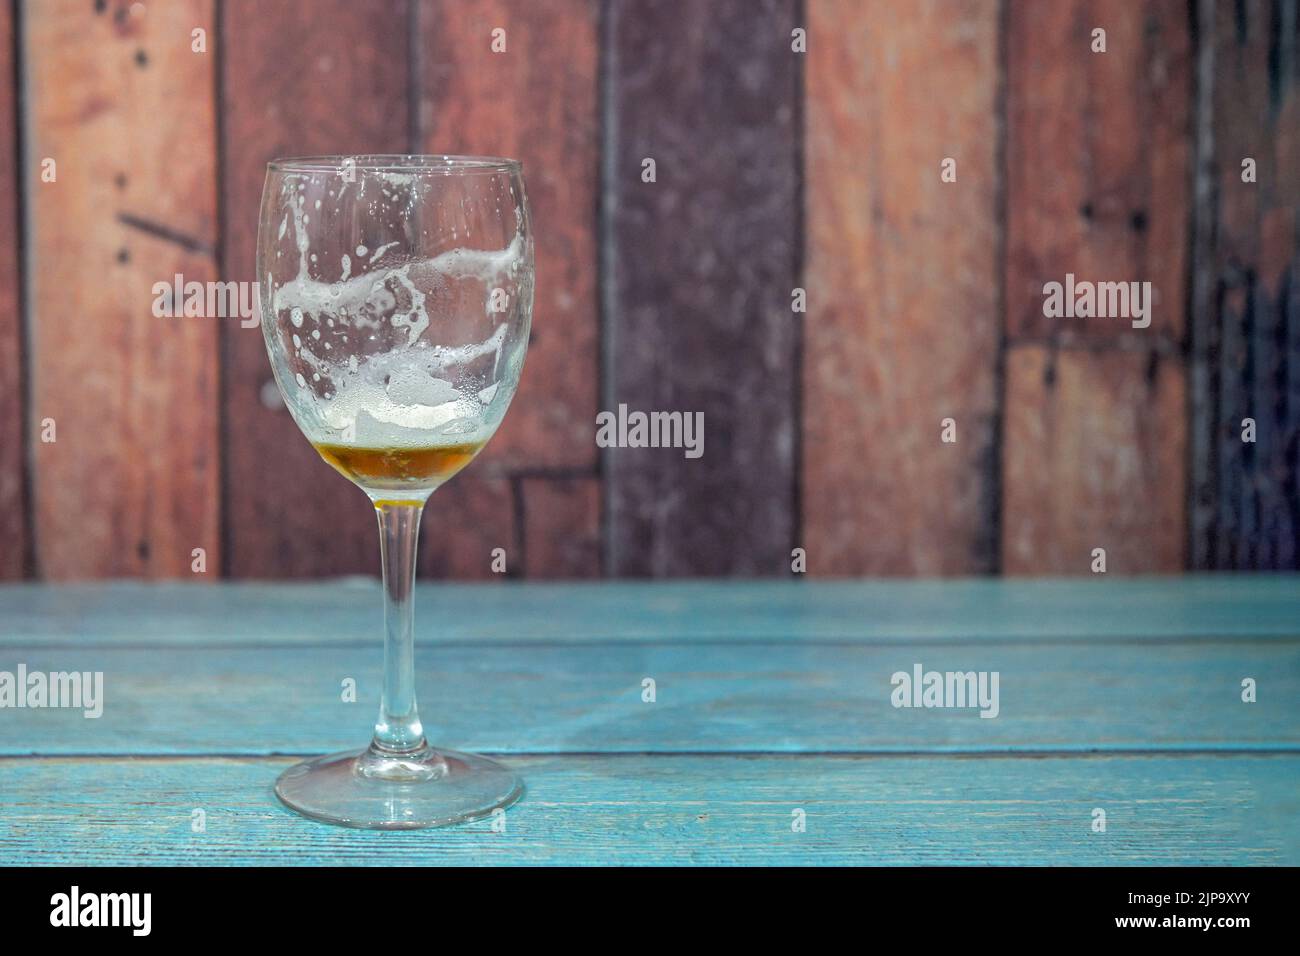 Tasse de bière glacée avec un apéritif Jamon, sur une table en bois. Banque D'Images